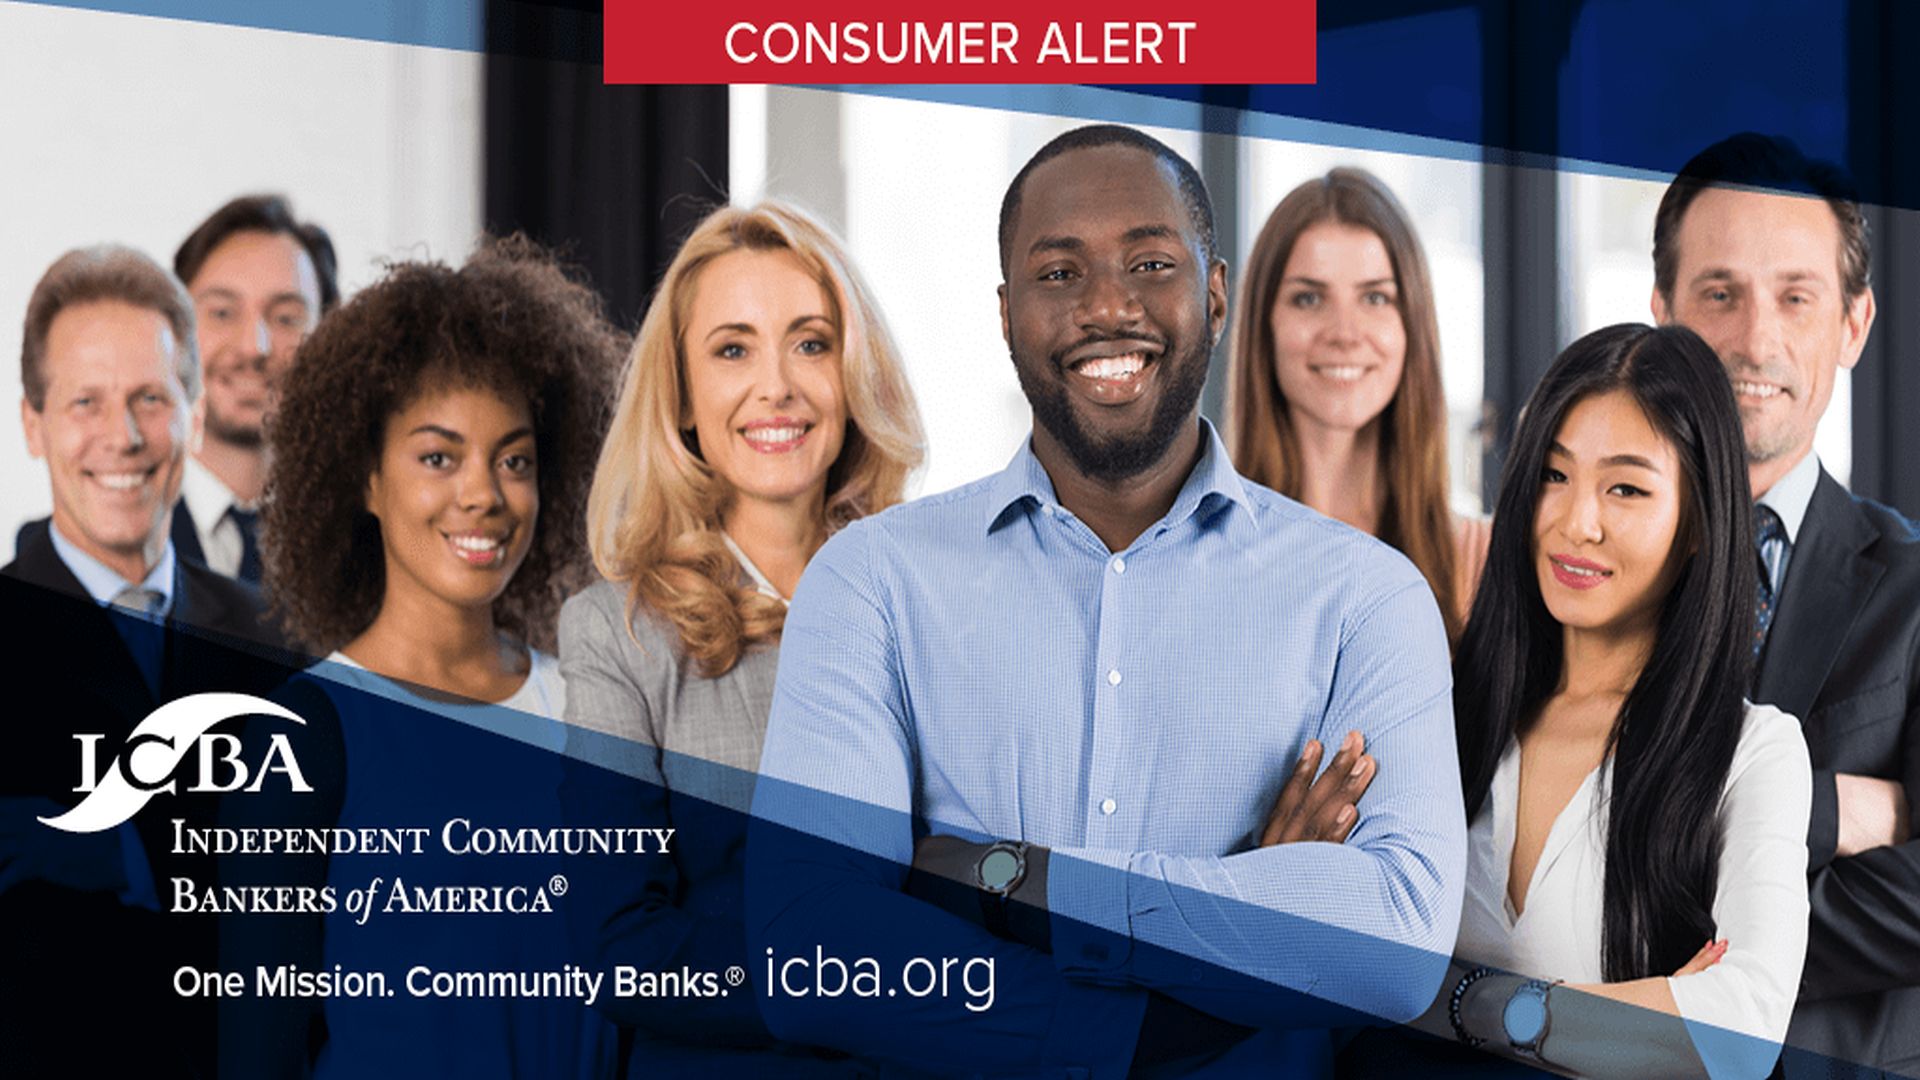 ICBA Consumer Alert